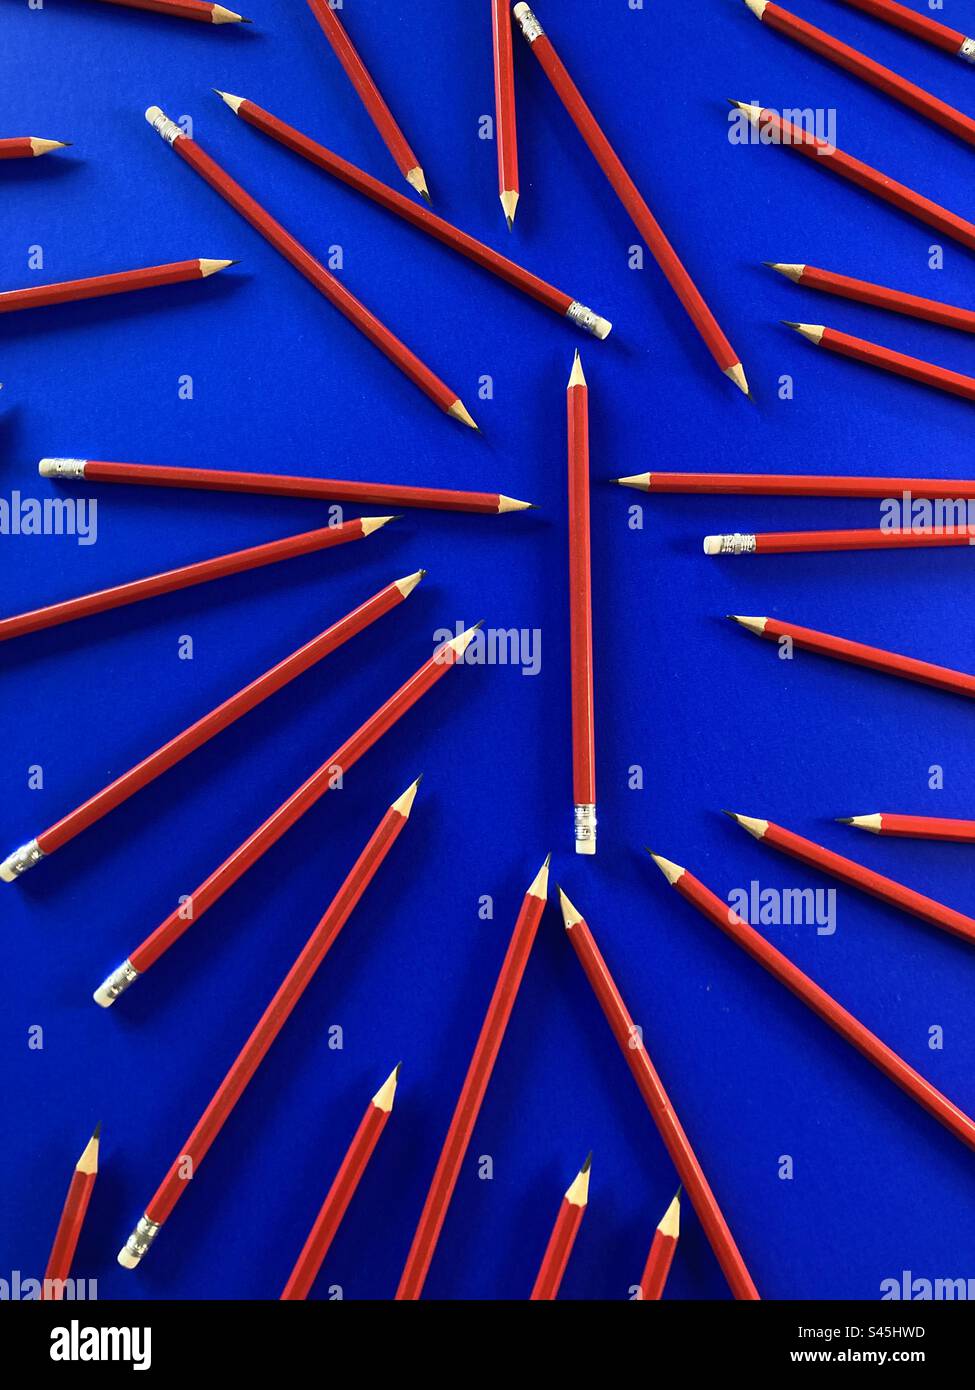 Gros plan de l'ensemble de crayons de charbon isolé sur fond bleu Banque D'Images